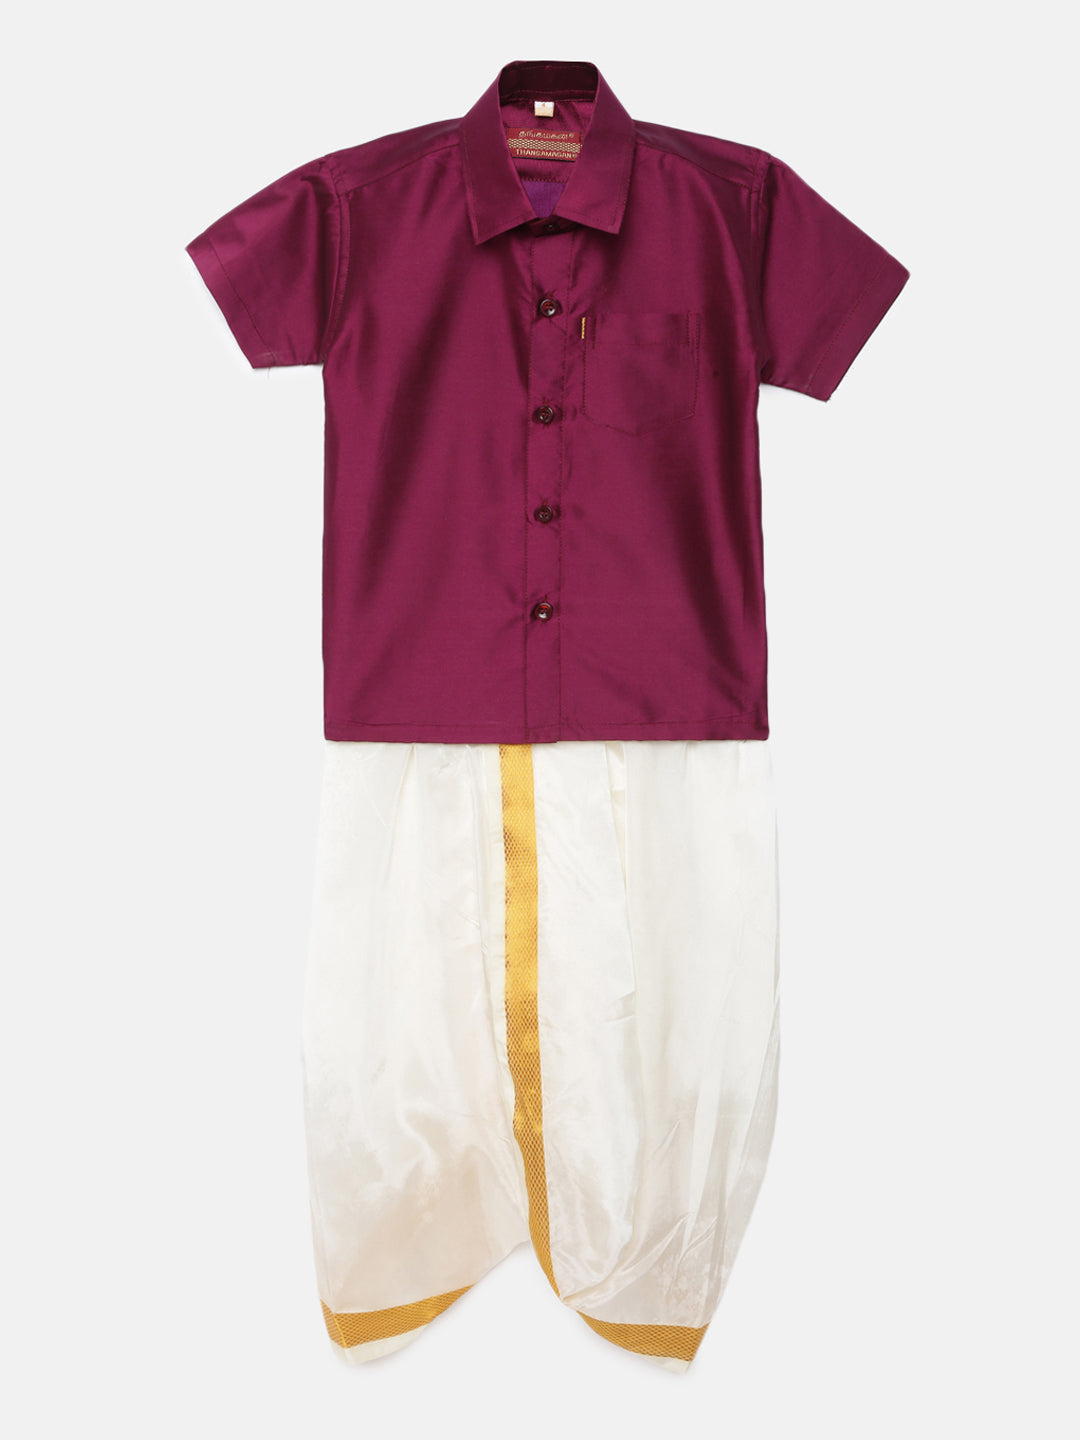 4. Boys Panjagajam & Shirt Set